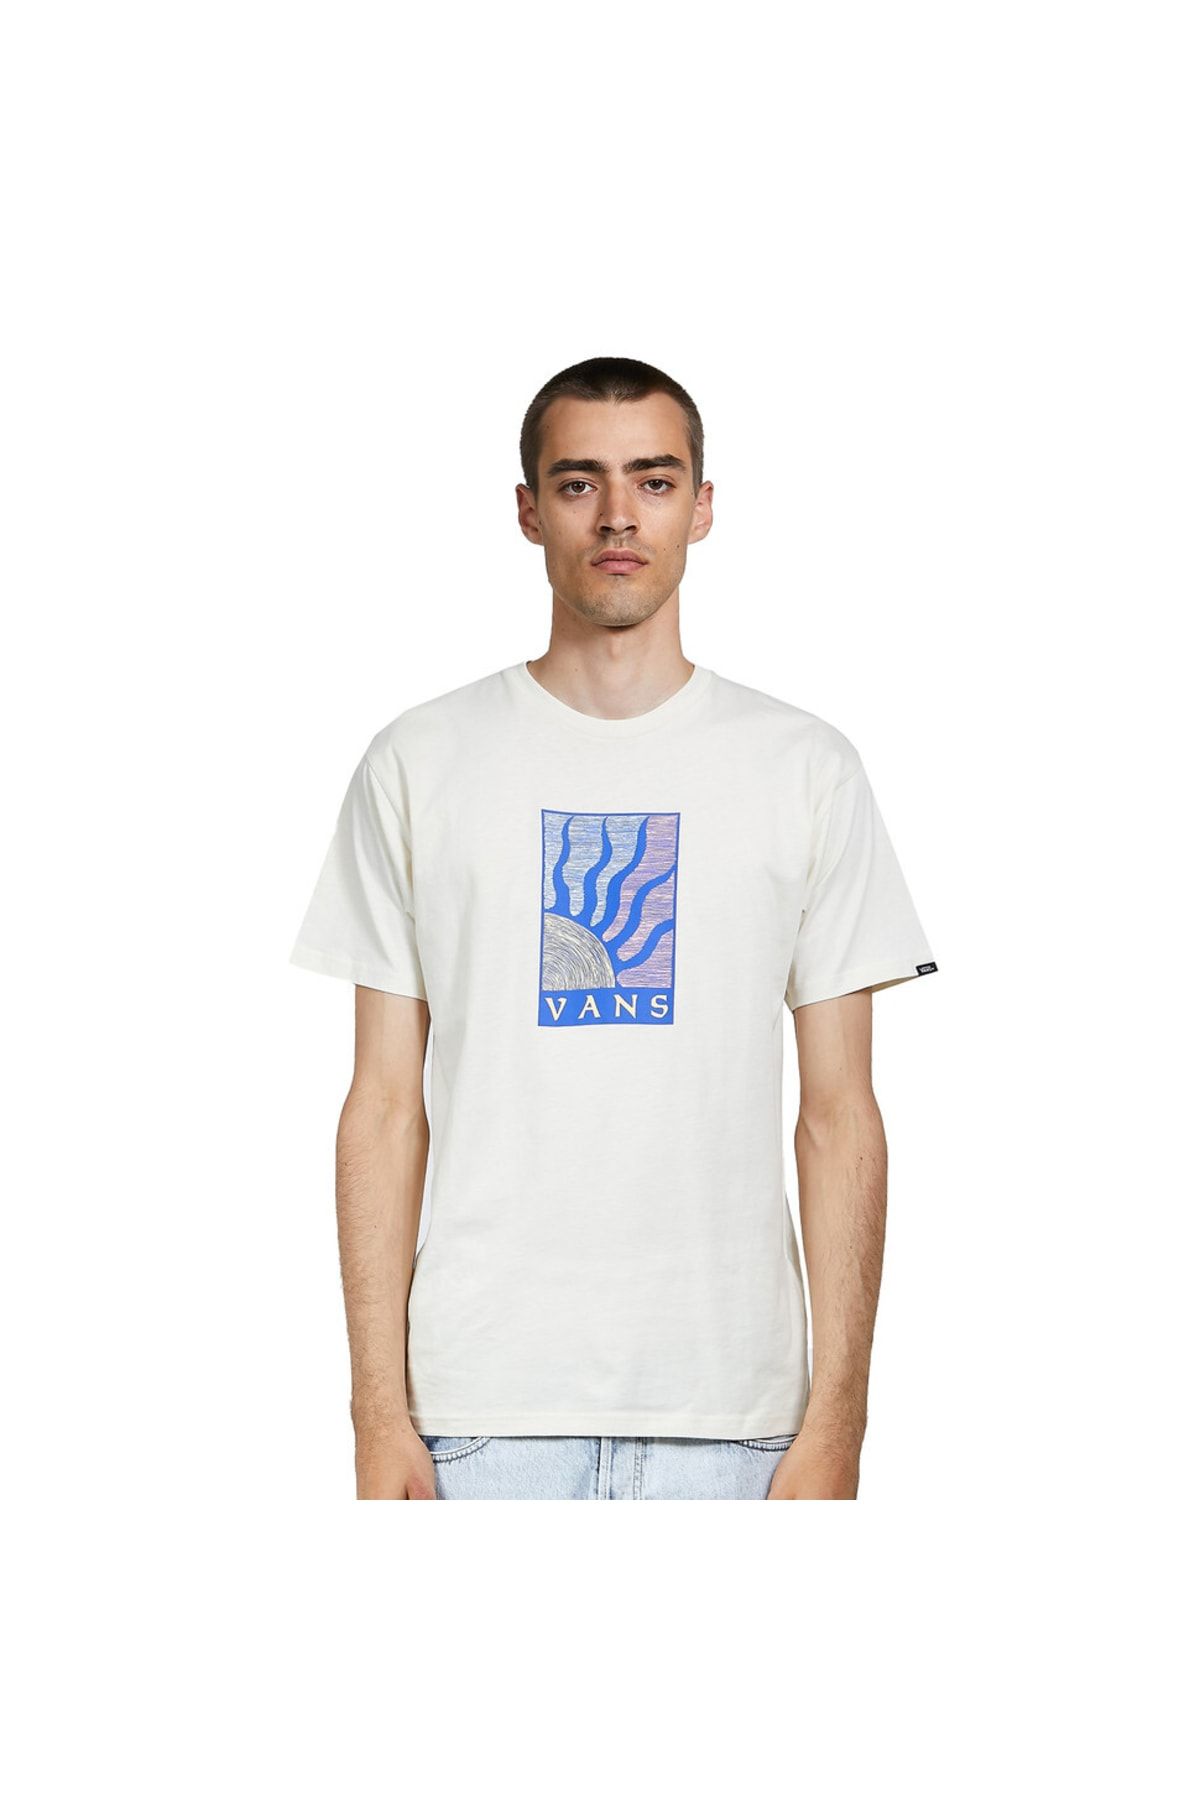 تی شرت سفید یقه گرد طرح چاپی مدل گرافیکی آستین کوتاه مردانه ونس Vans (برند آمریکا)